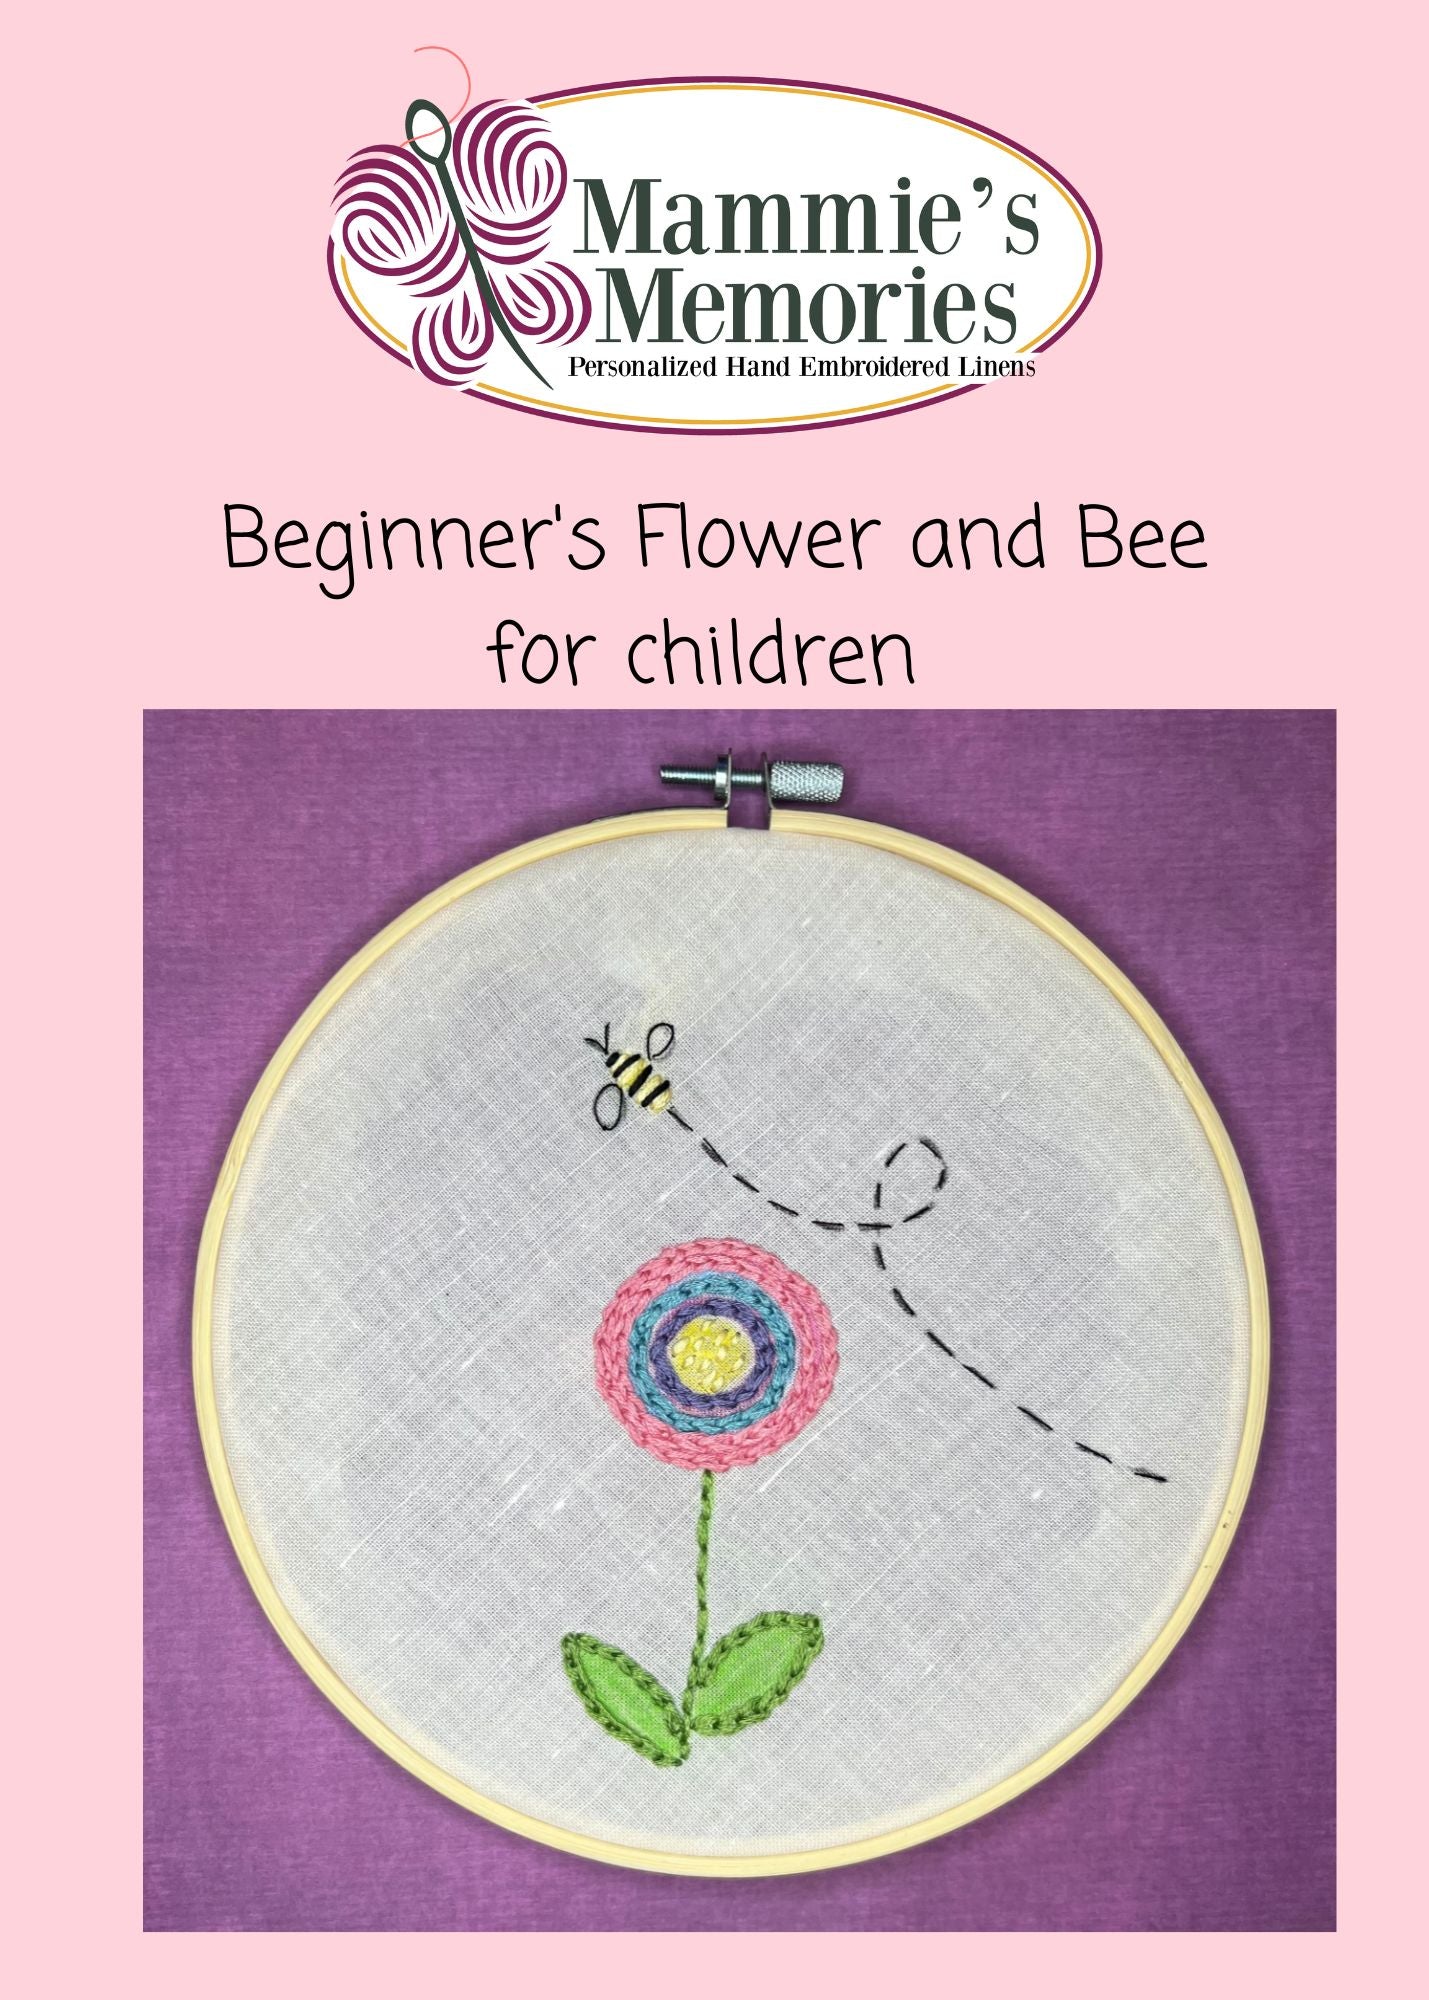 Beginner's Flower and Bee Kit